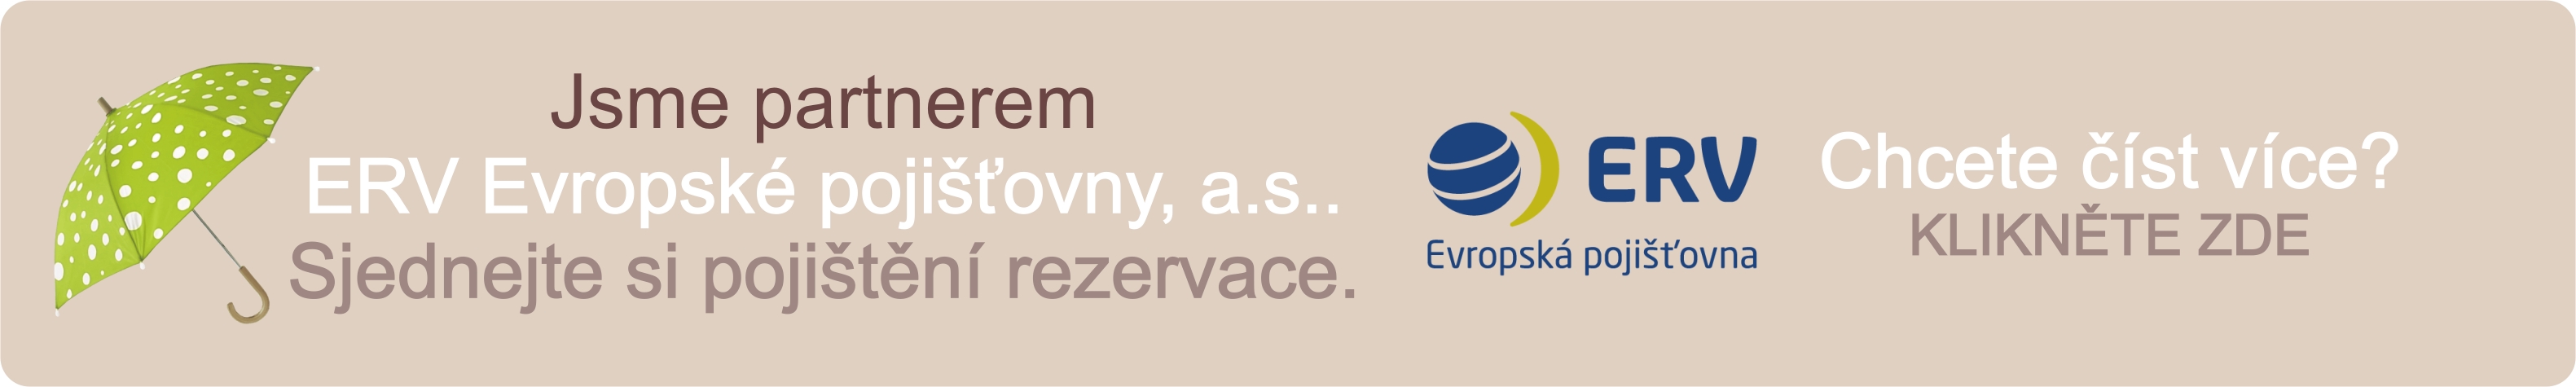 Jsme partnerem ERV Evropské pojišťovny, a.s.